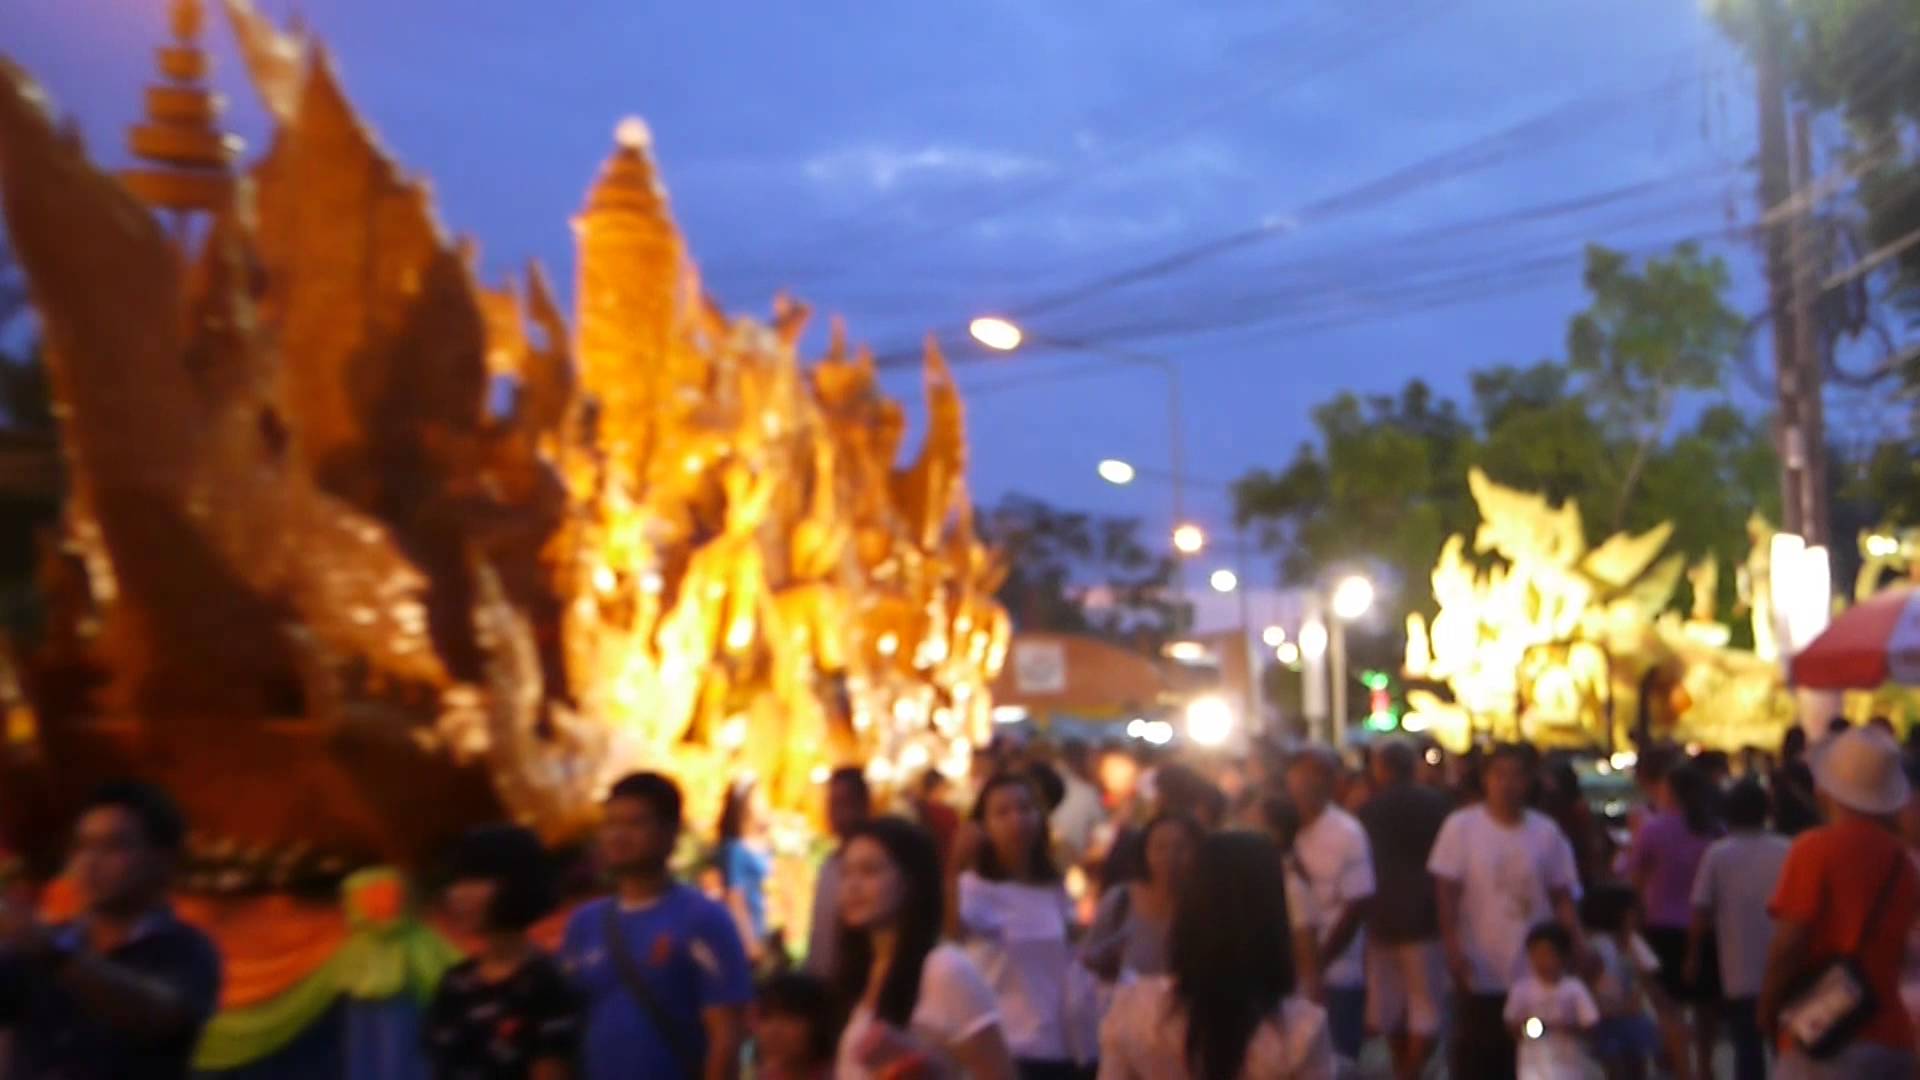 Ubon Ratchathani Candle Festival 2014. Part 2 of 5. - YouTube